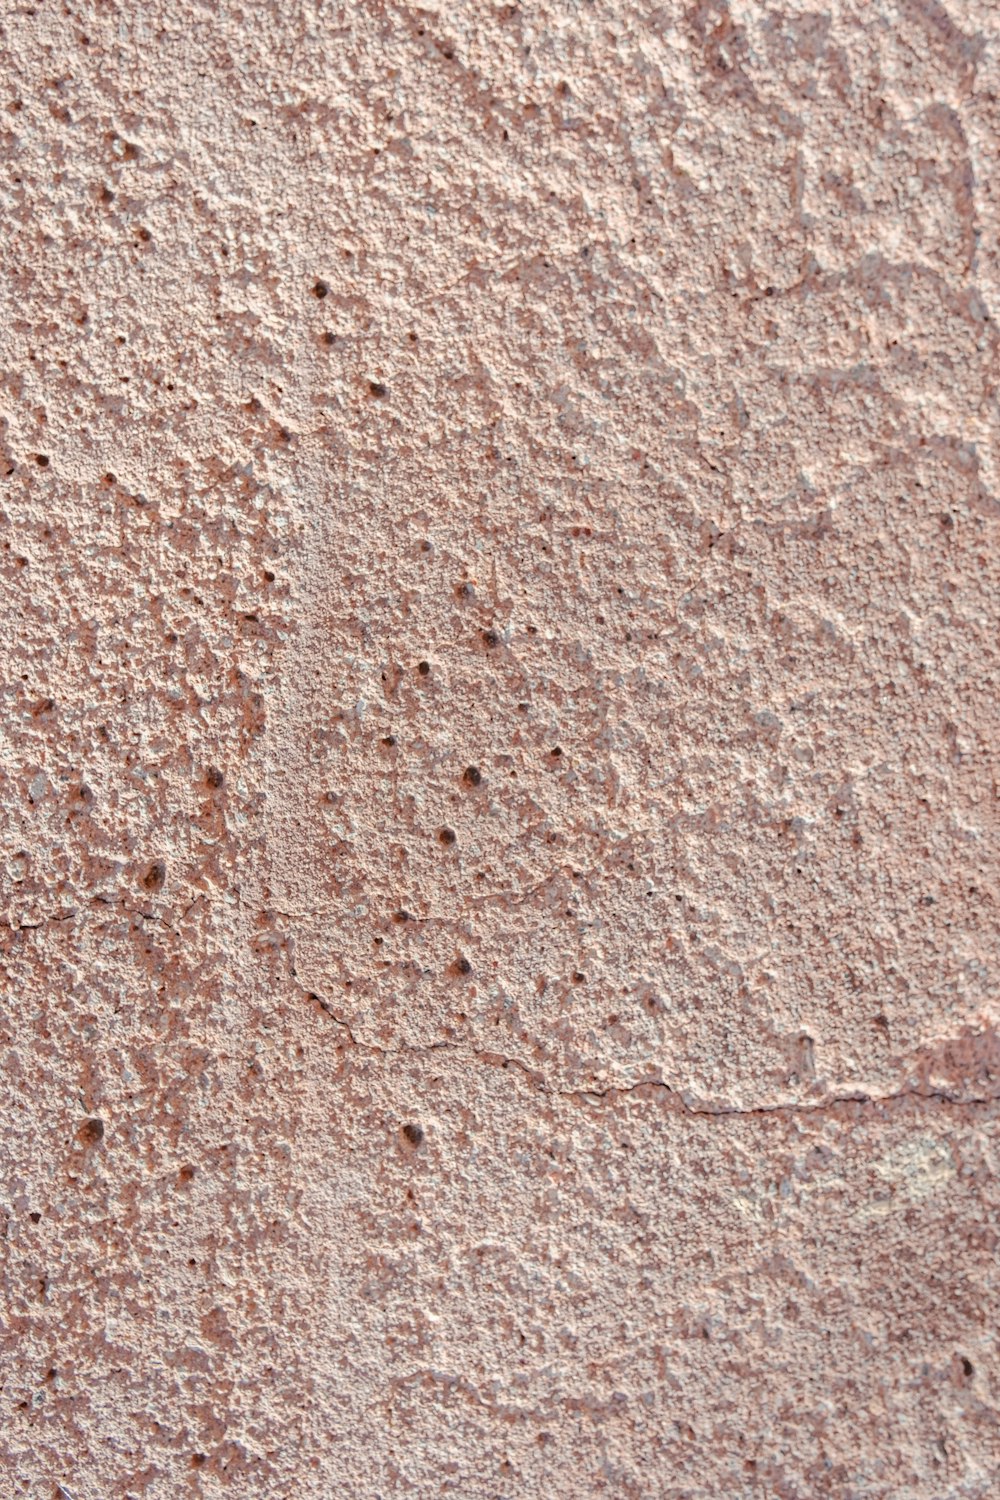 um close up de uma parede com pequenos orifícios nela